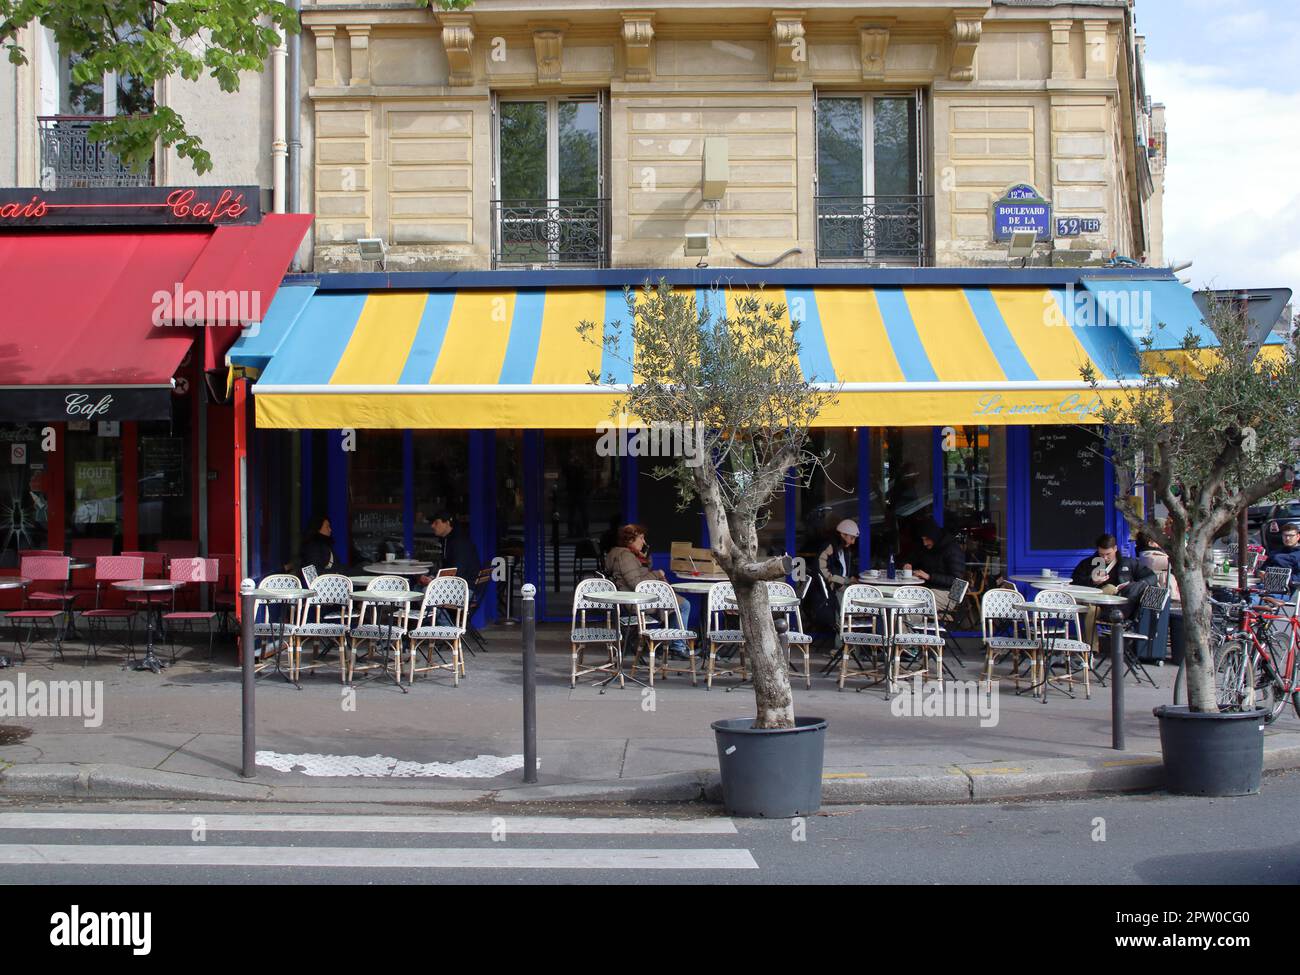 Vue d'angle d'un restaurant-bar typiquement parisien situé sur le boulevard de la Bastille dans le 12th arrondissement de Paris France Banque D'Images